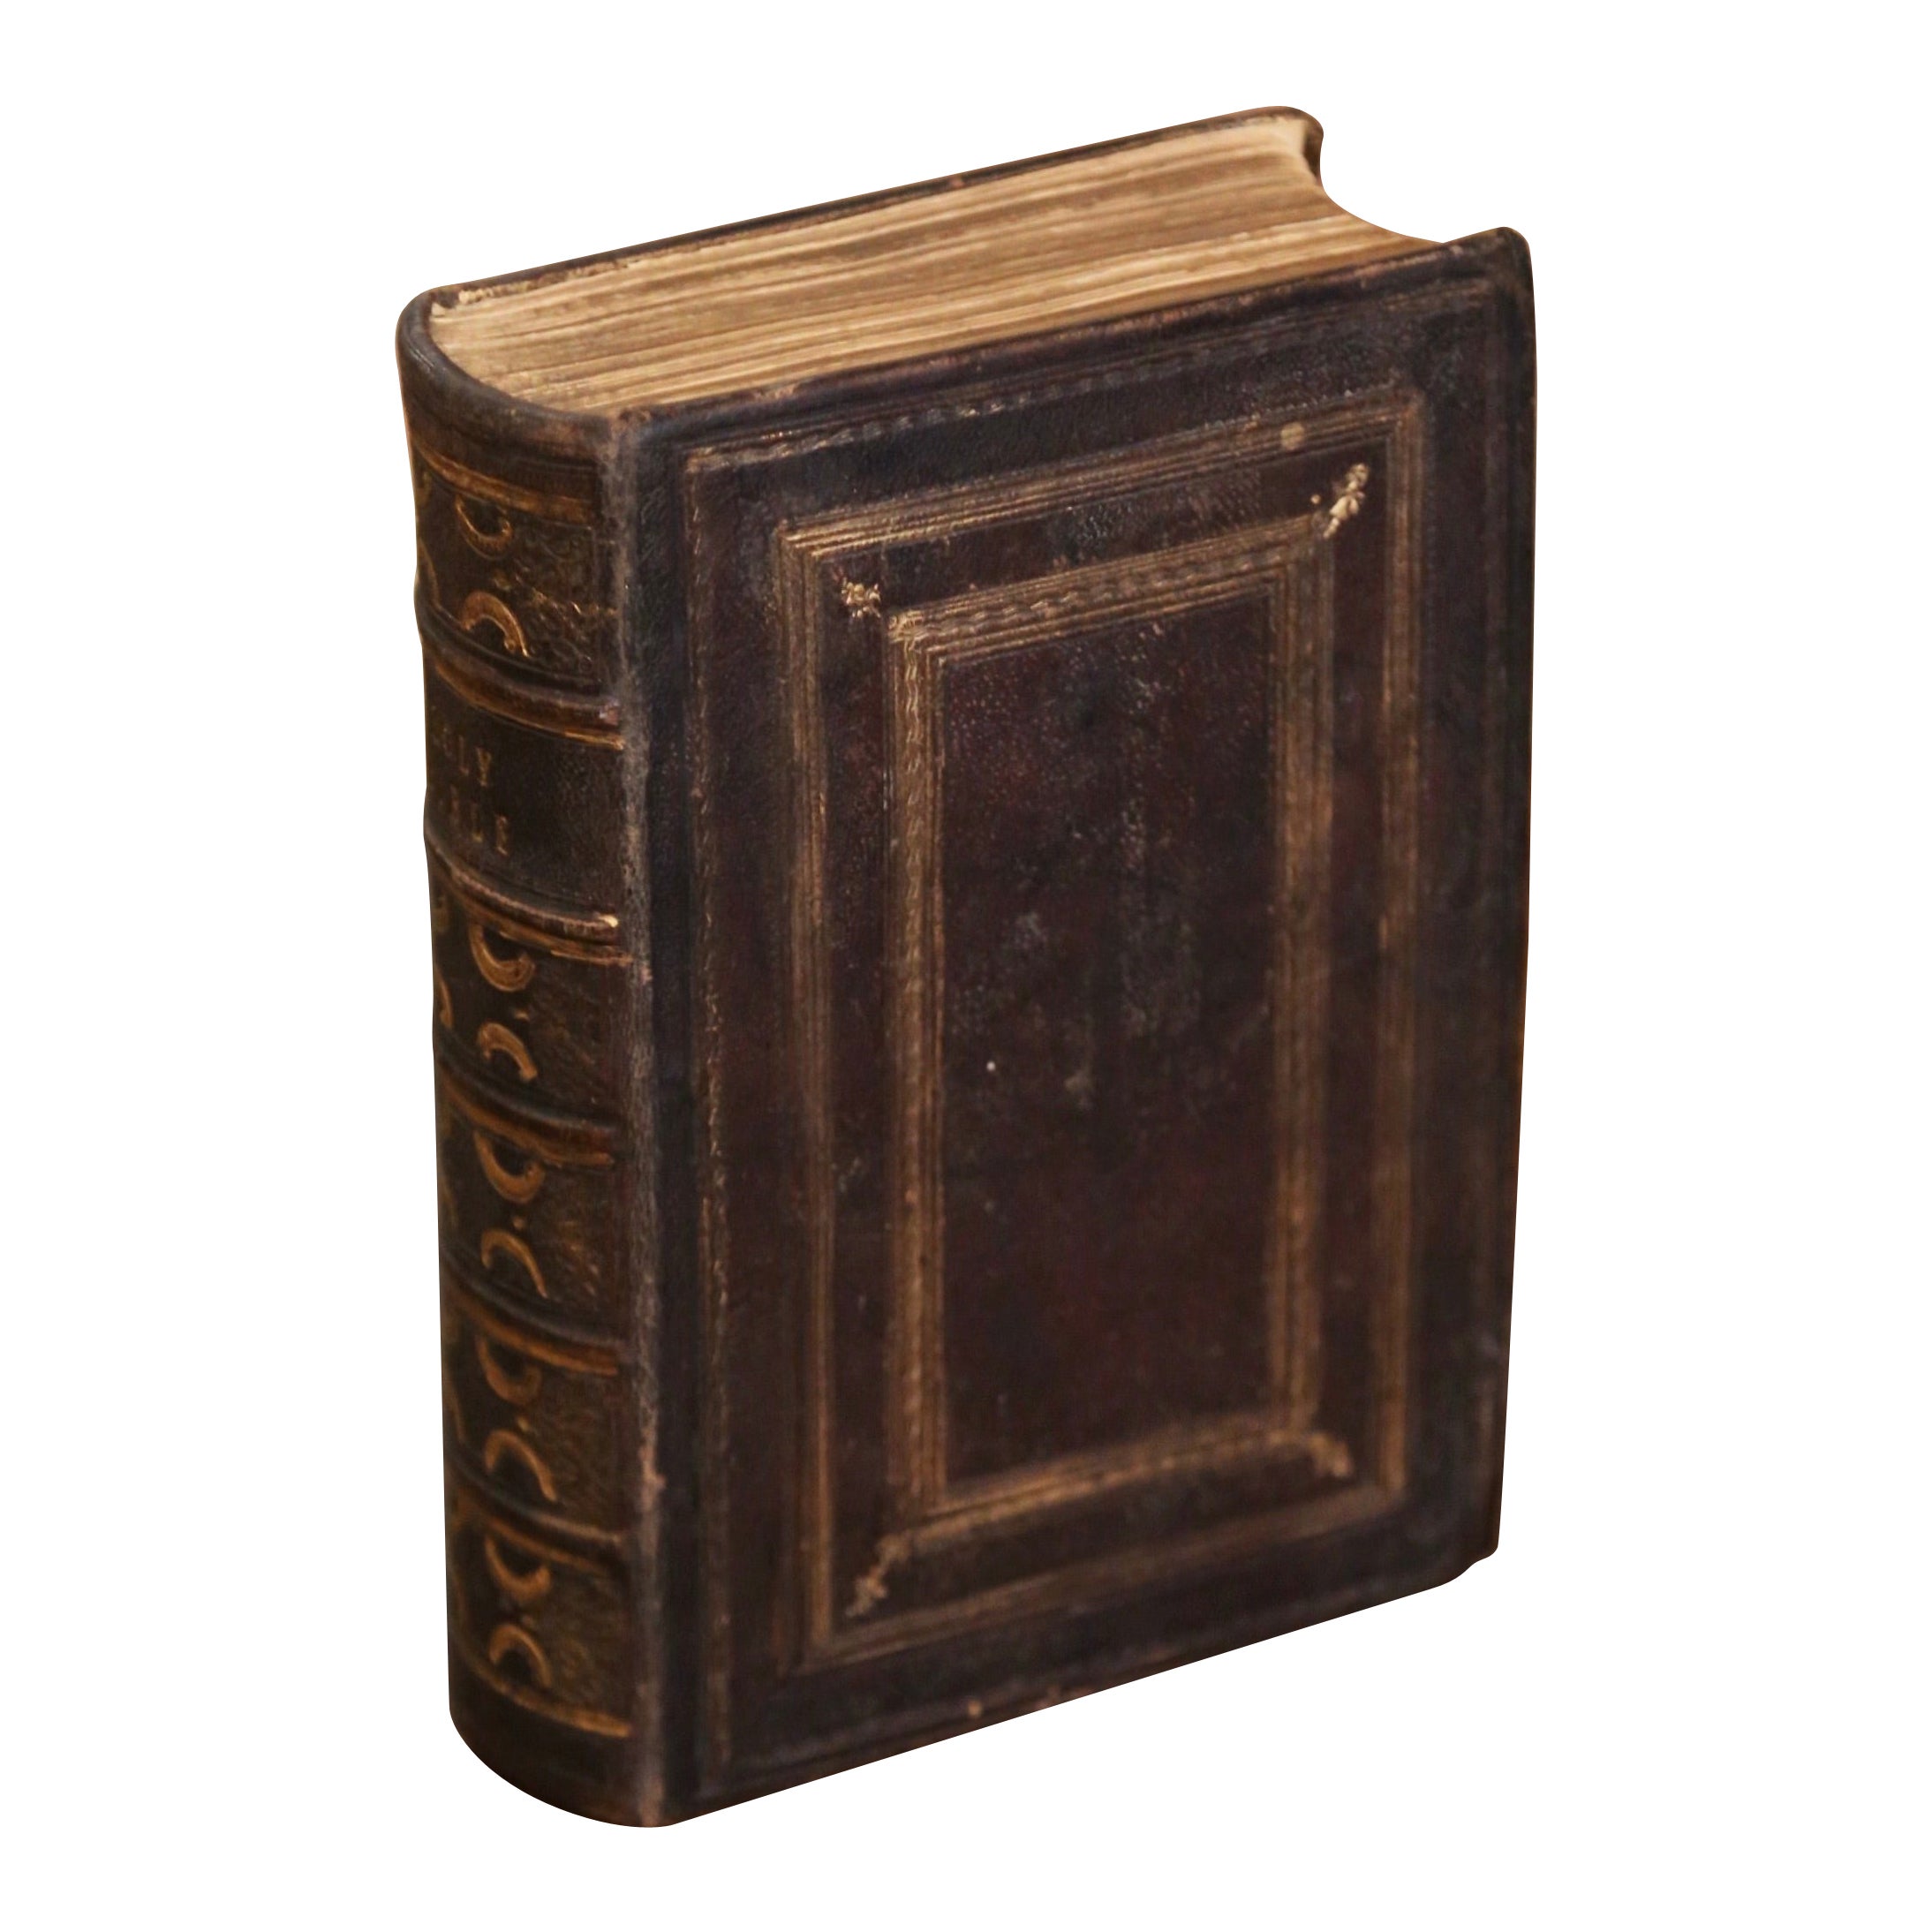 Bible anglaise du 19ème siècle, reliée en cuir brun gaufré et doré, datée de 1847